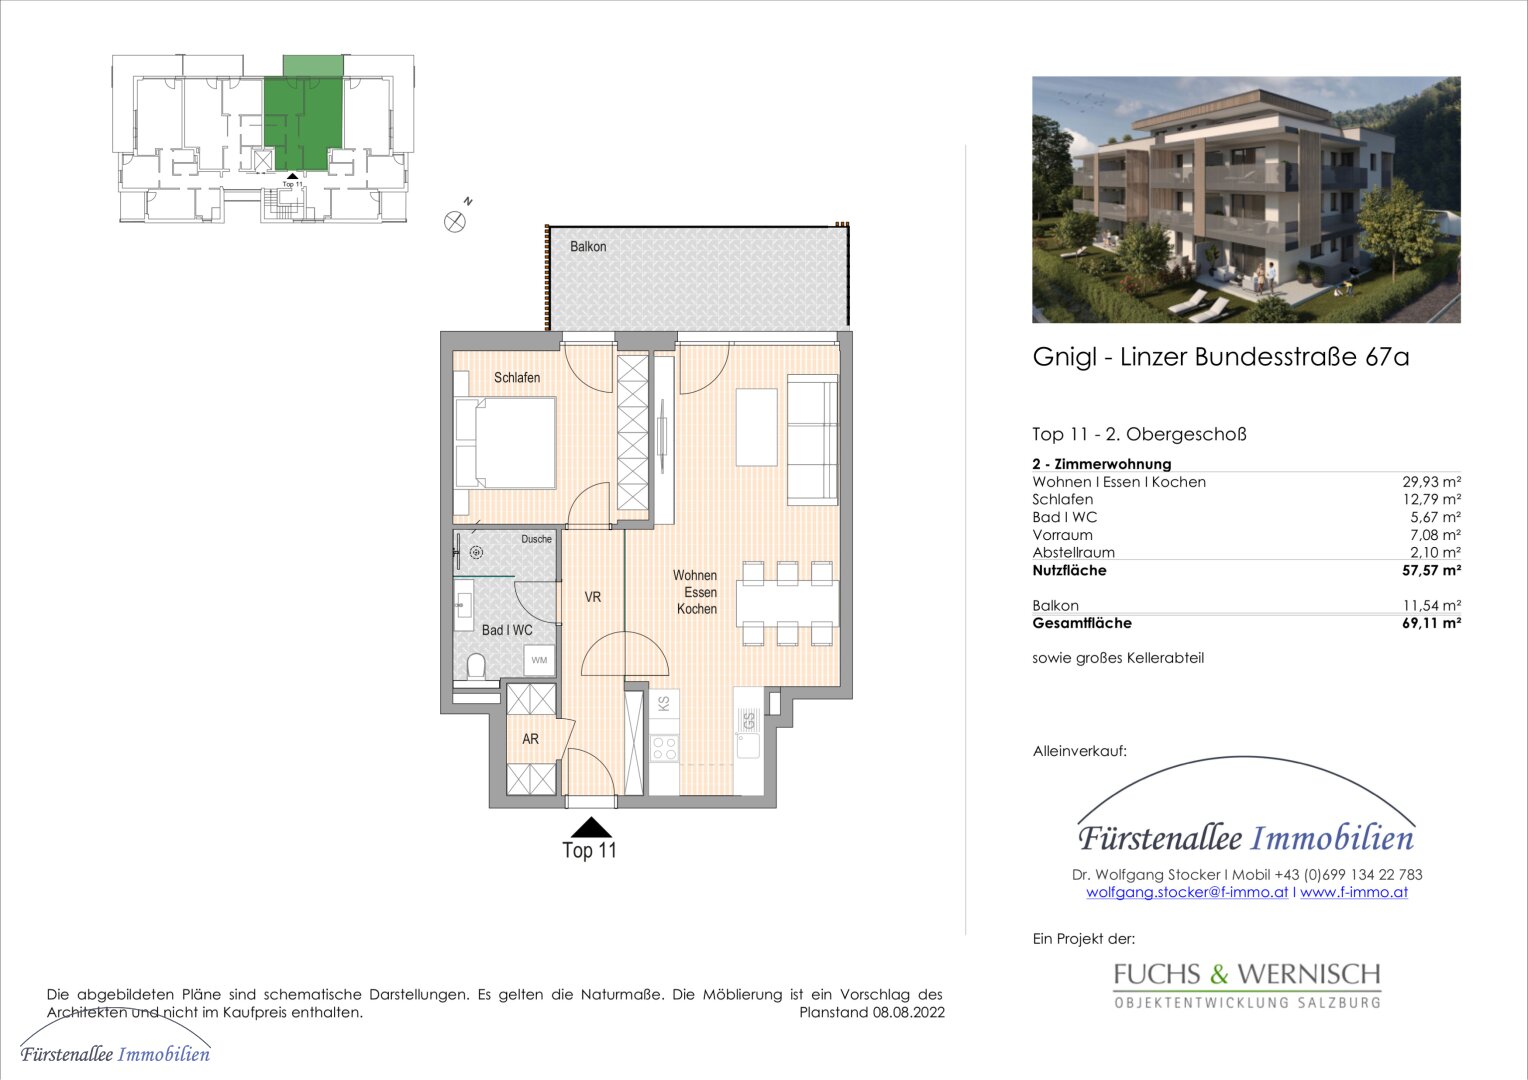 KAUF SALZBURG-STADT: NEUBAU/ERSTBEZUG - LINZER BUNDESSTRASSE 67: 58 m² 2-Zimmer-Wohnung - mit 12 m² Balkon - Top W 11 - bezugsfertig binnen 4-6 Wochen